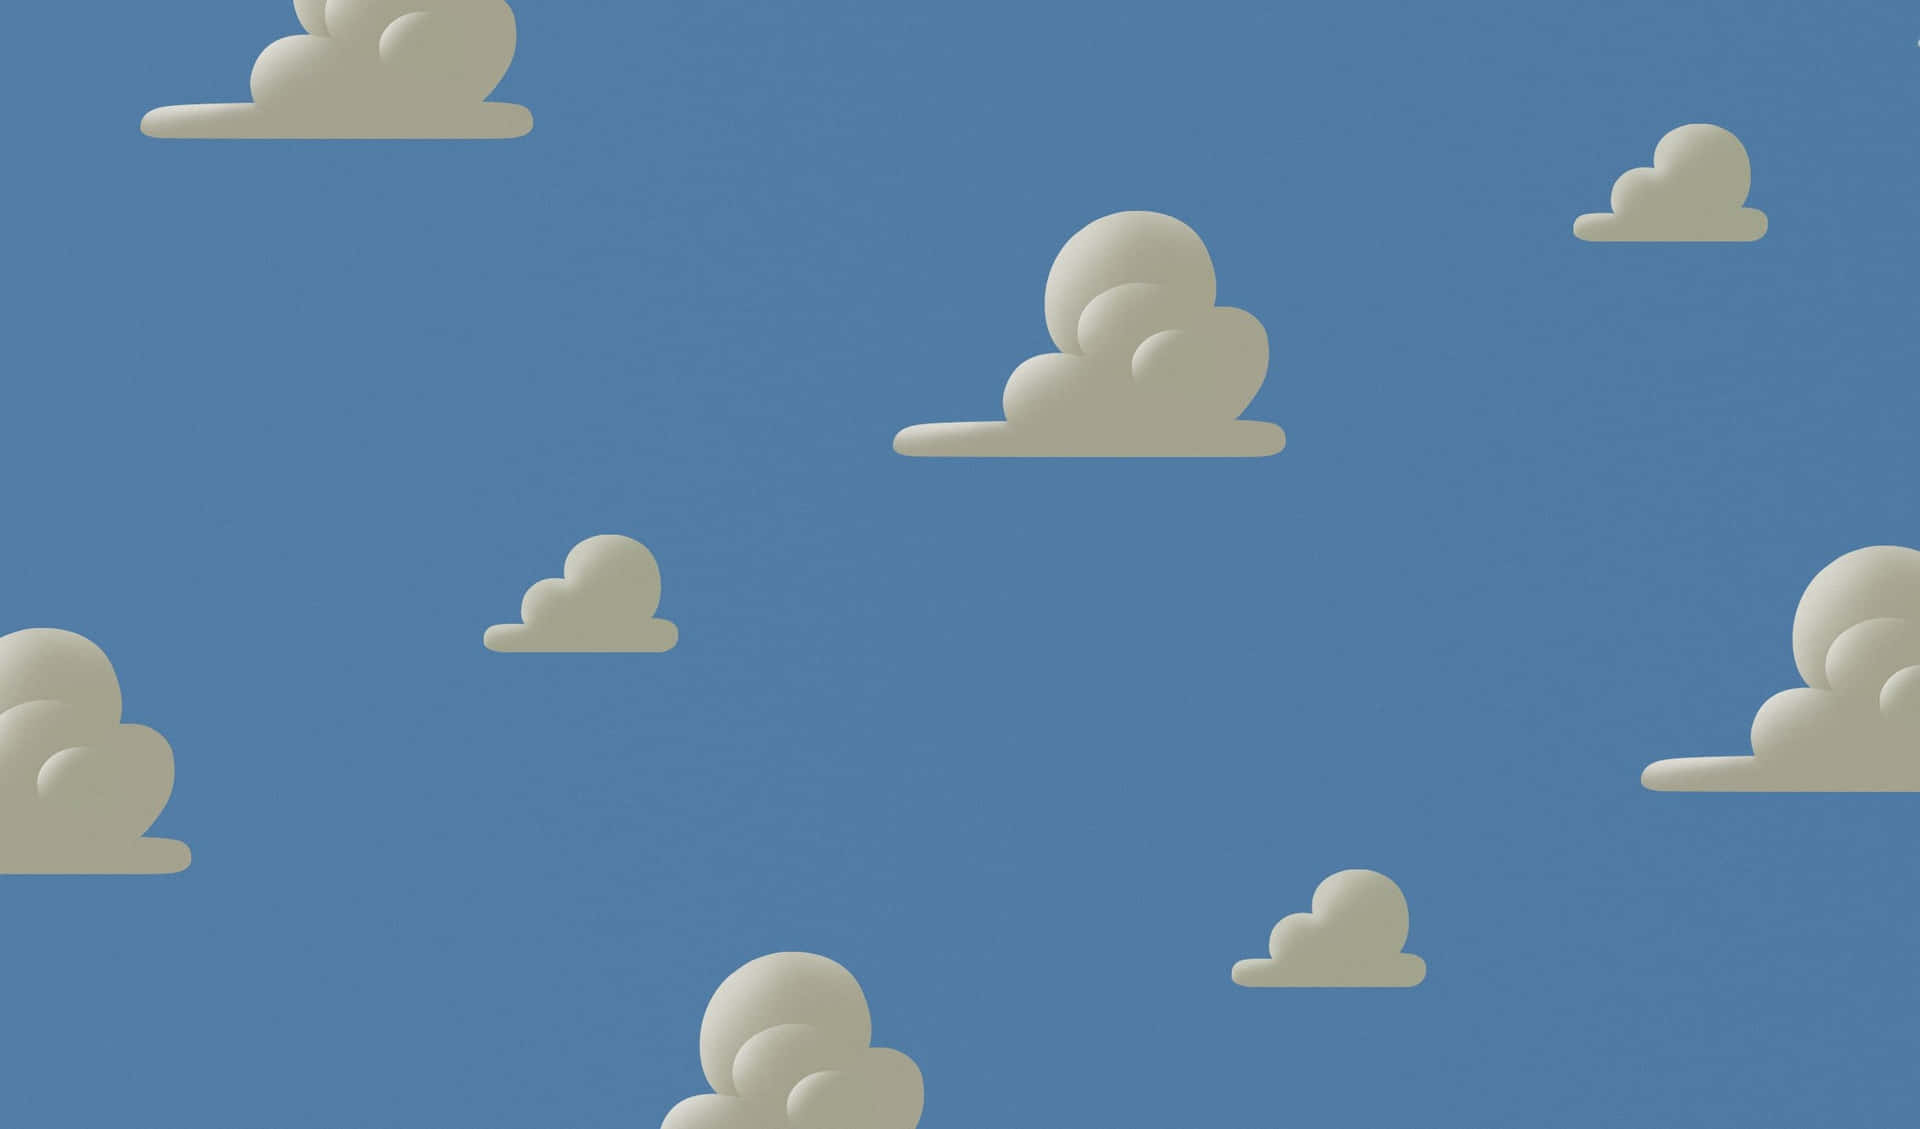 “Legetøjshistorien i skyen” Wallpaper